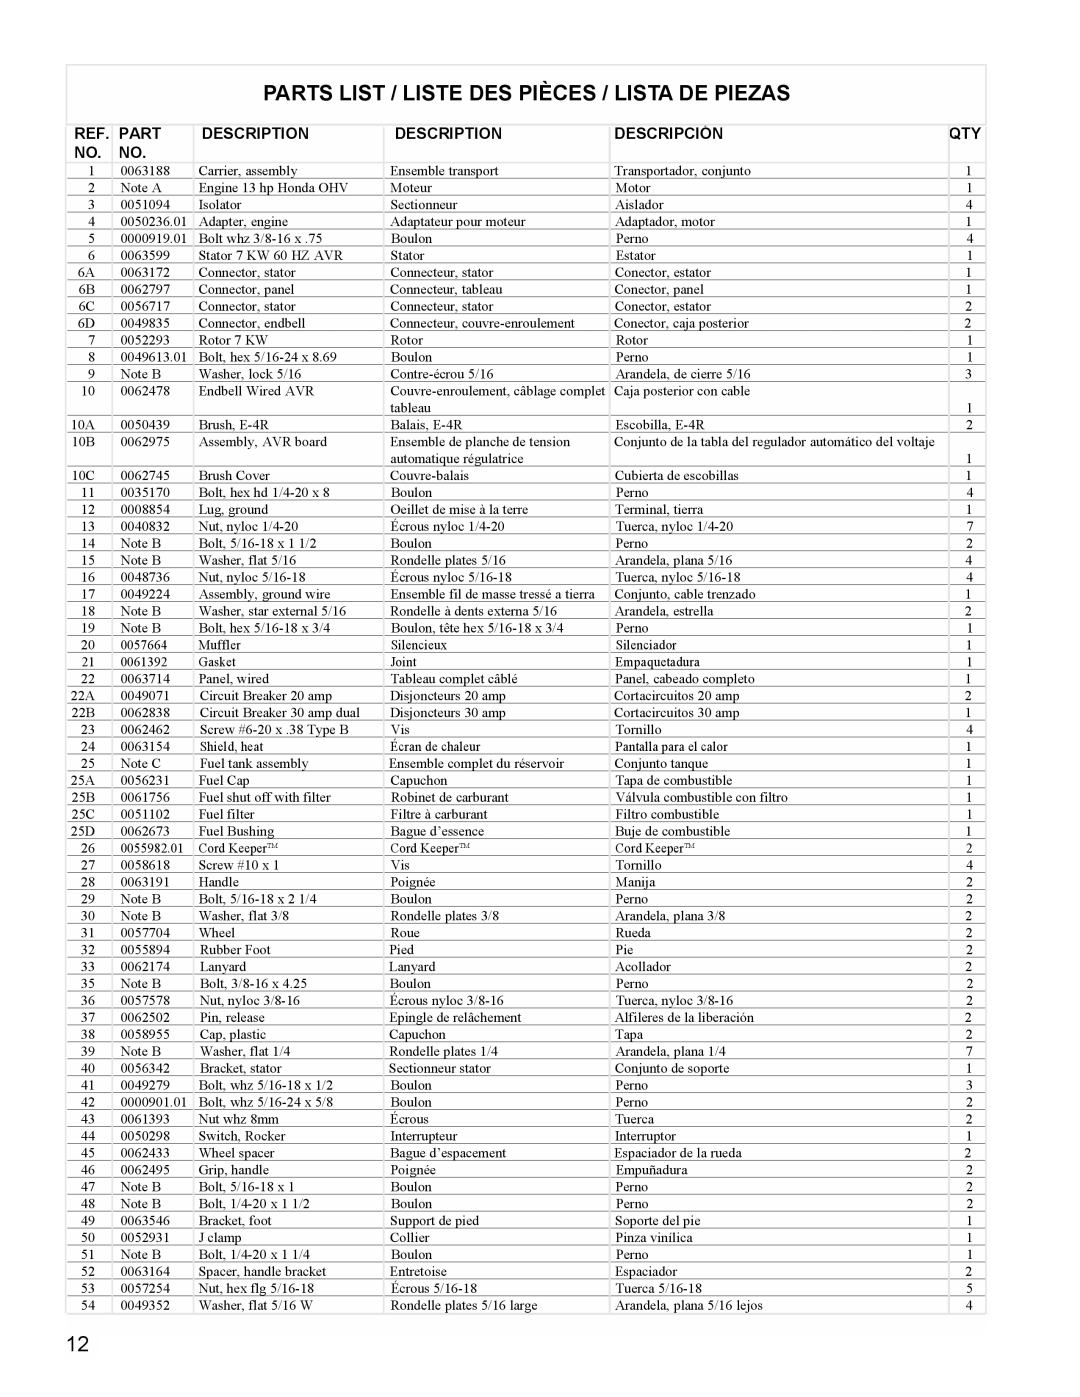 Powermate PMC497000 manual Parts List / Liste Des Pièces / Lista De Piezas, Description, Descripción 